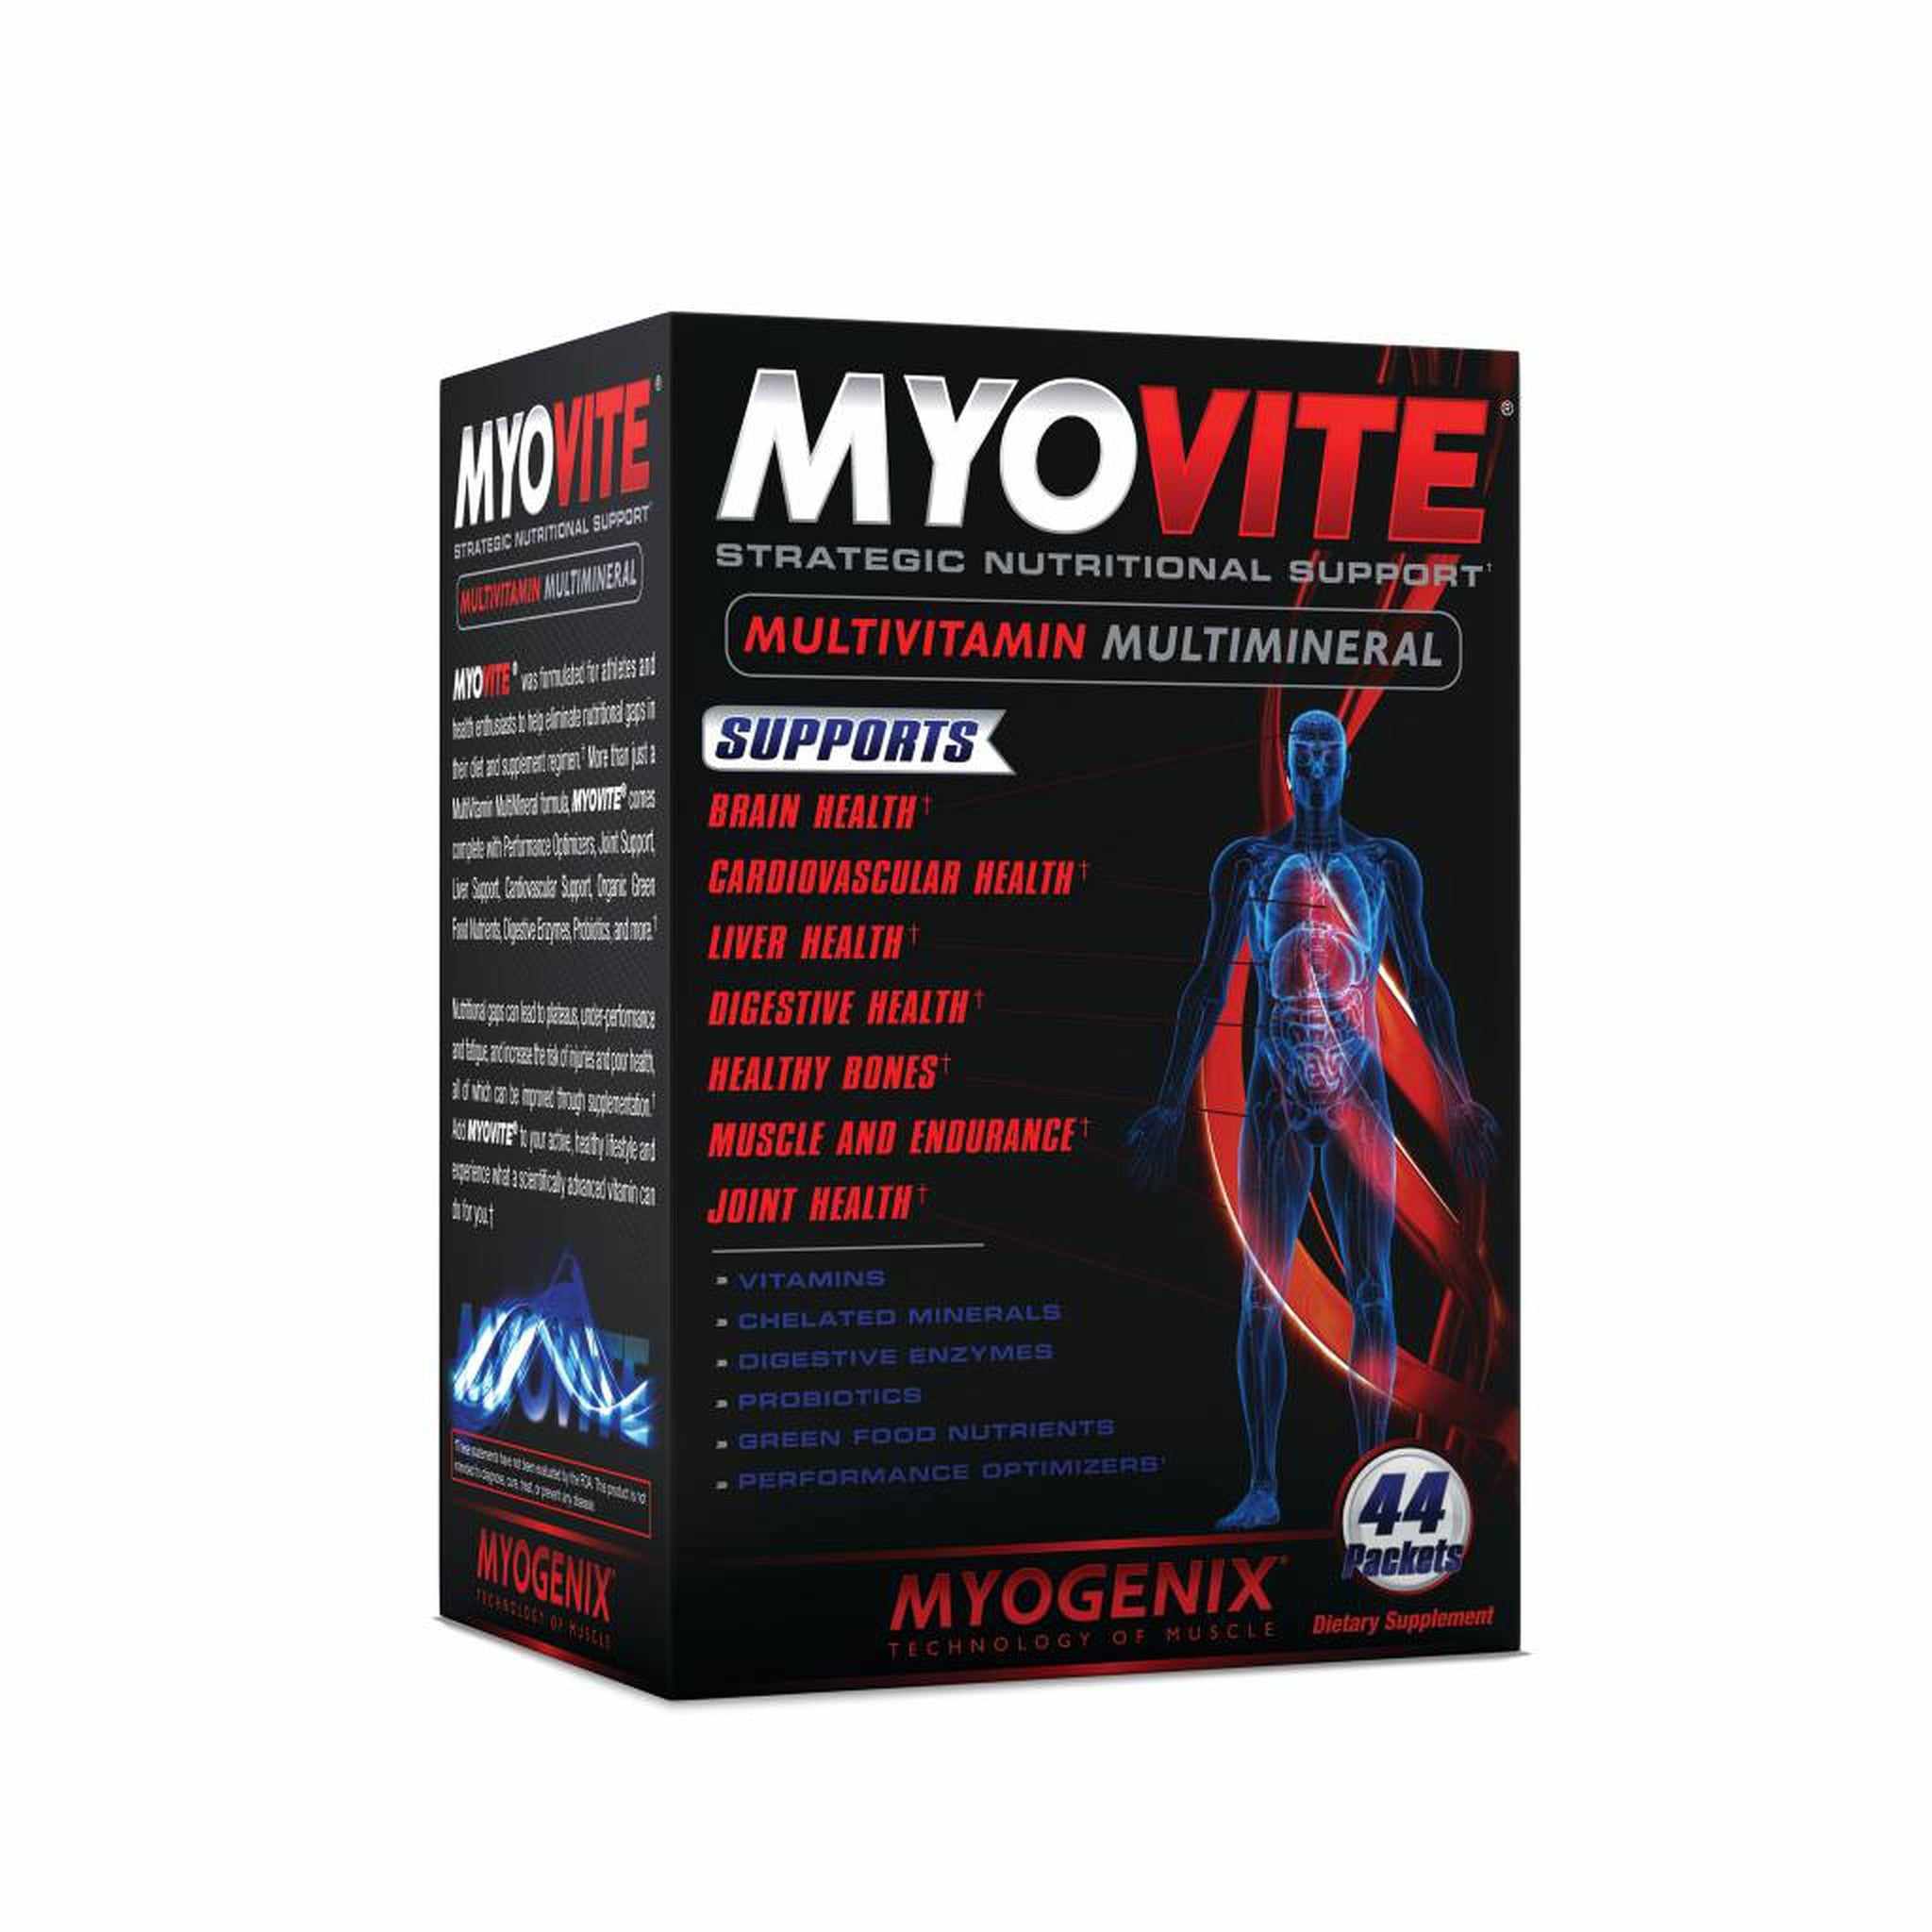 Myogenix Myovite Multi-vitamin - 44 Capsules - Ultimate Sport Nutrition